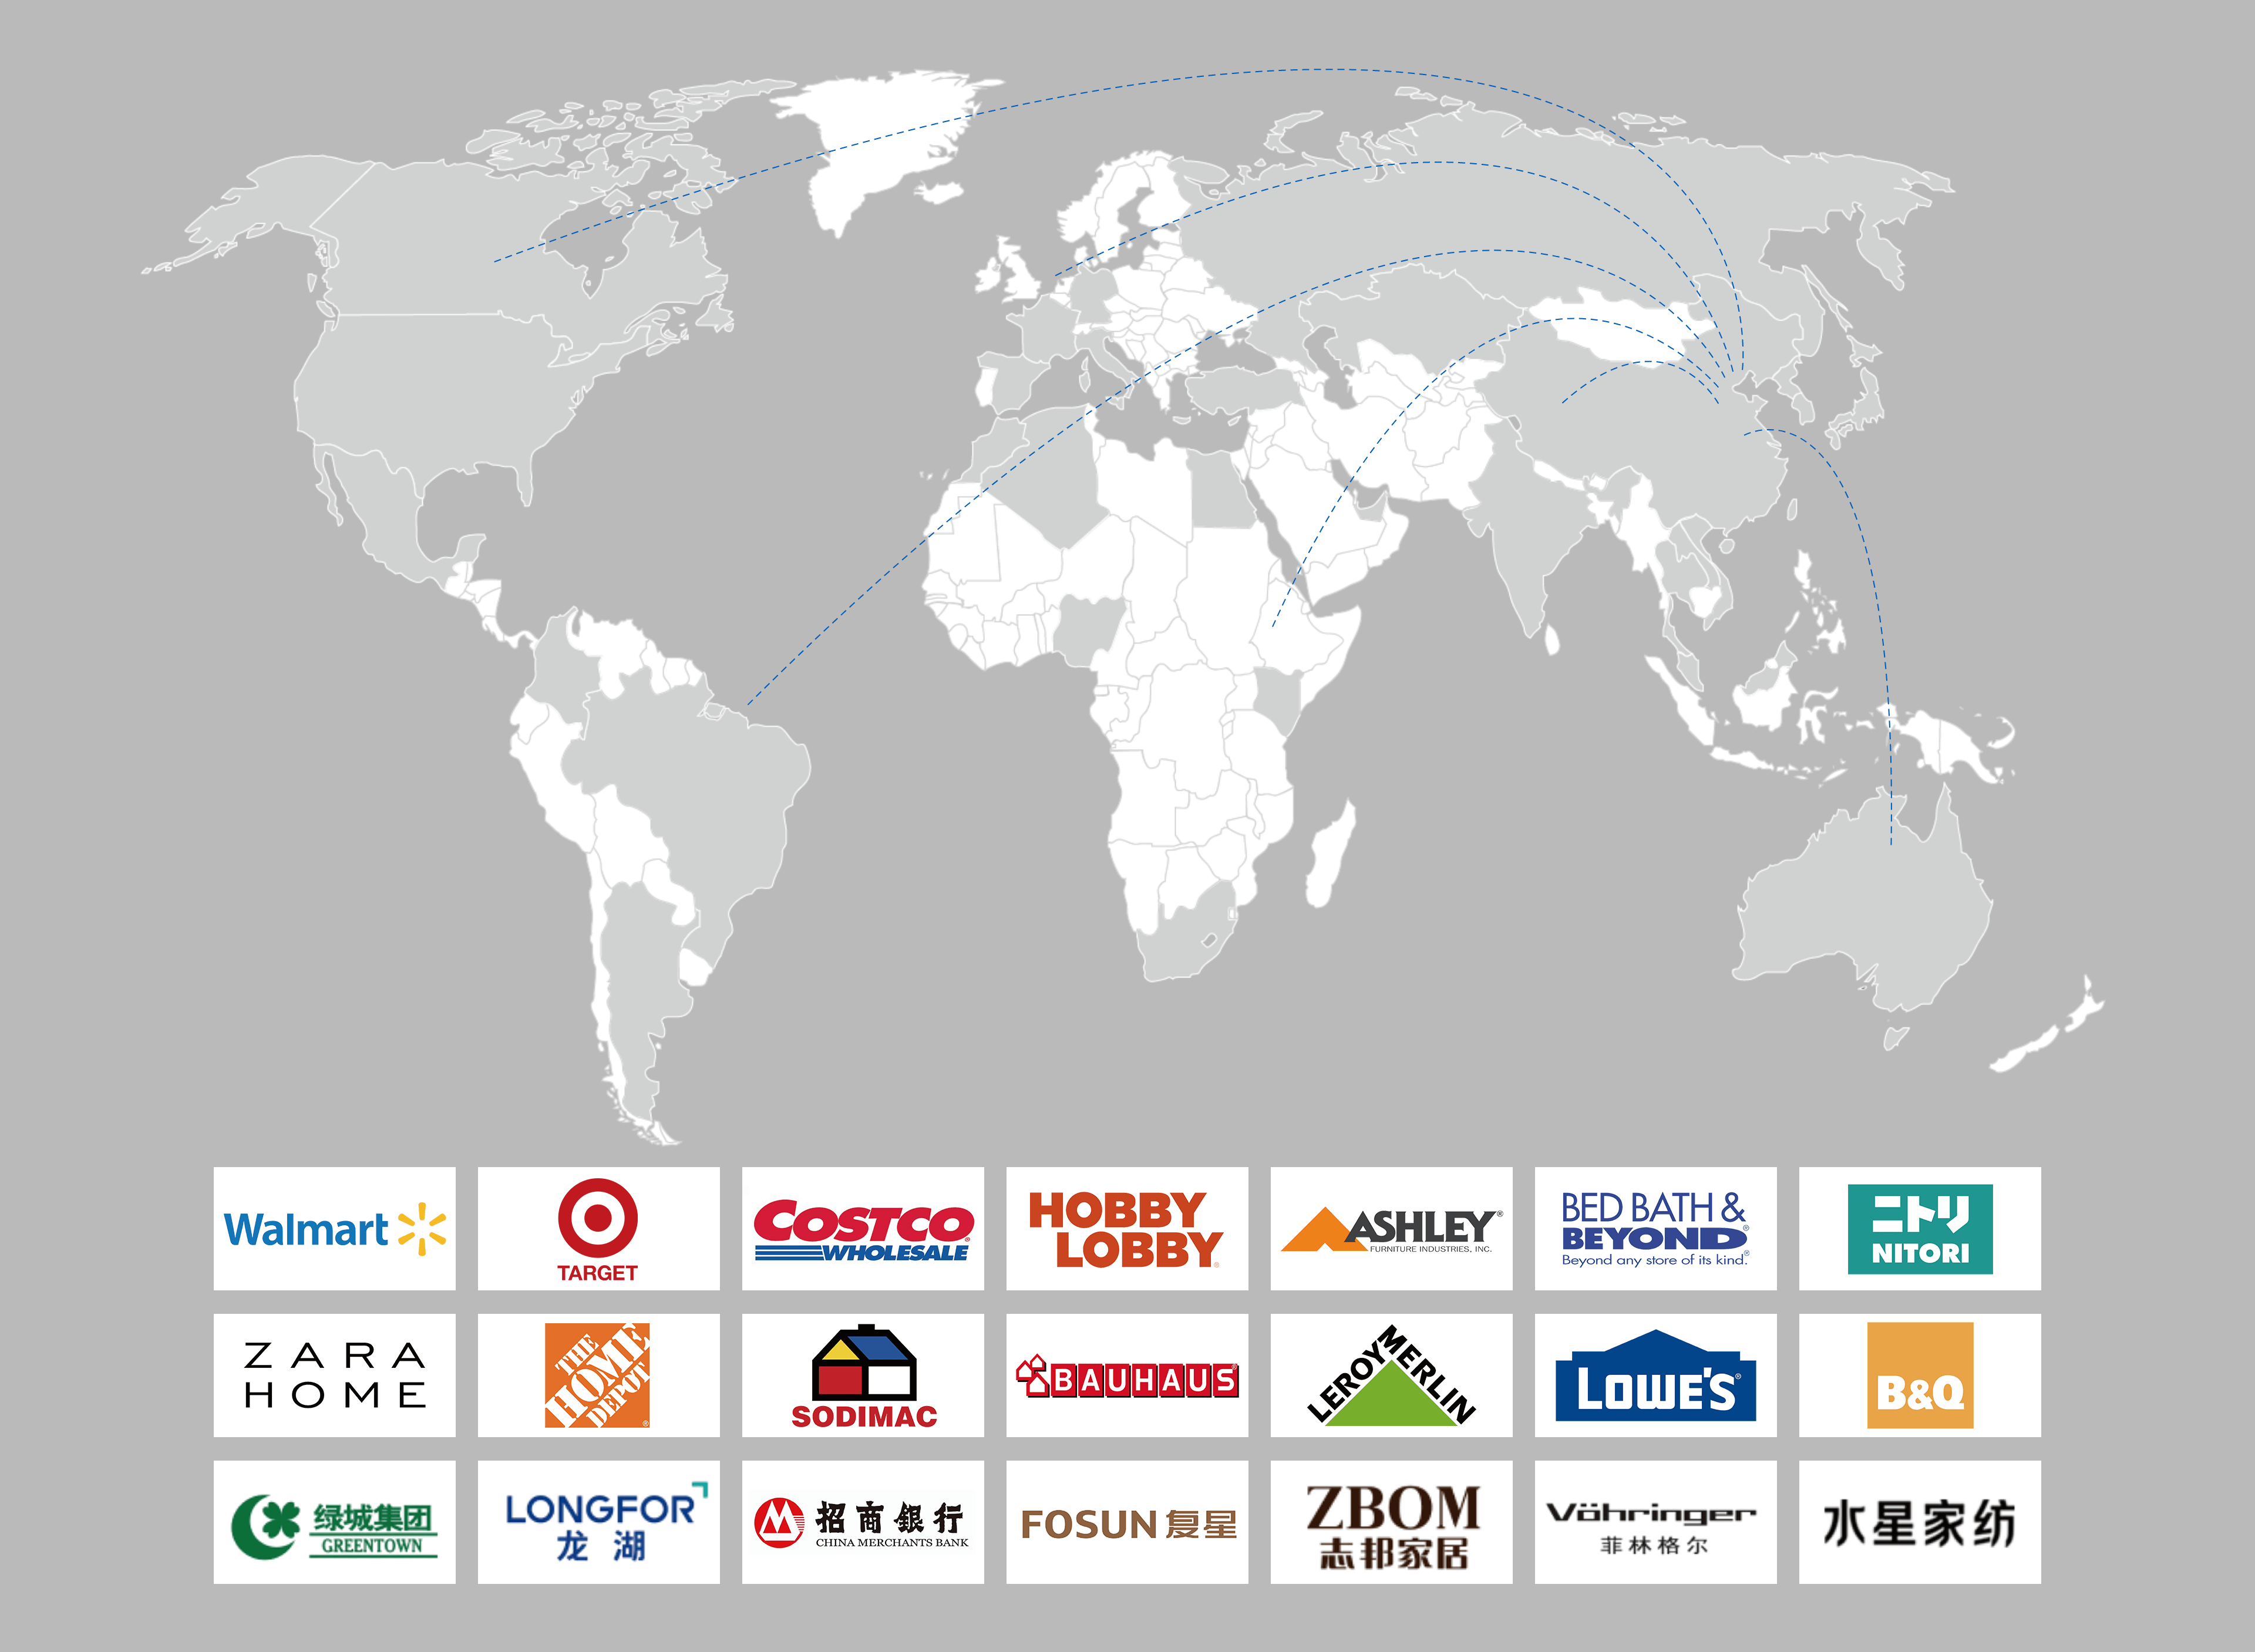 英科产品远销海内外120多个国家和地区。